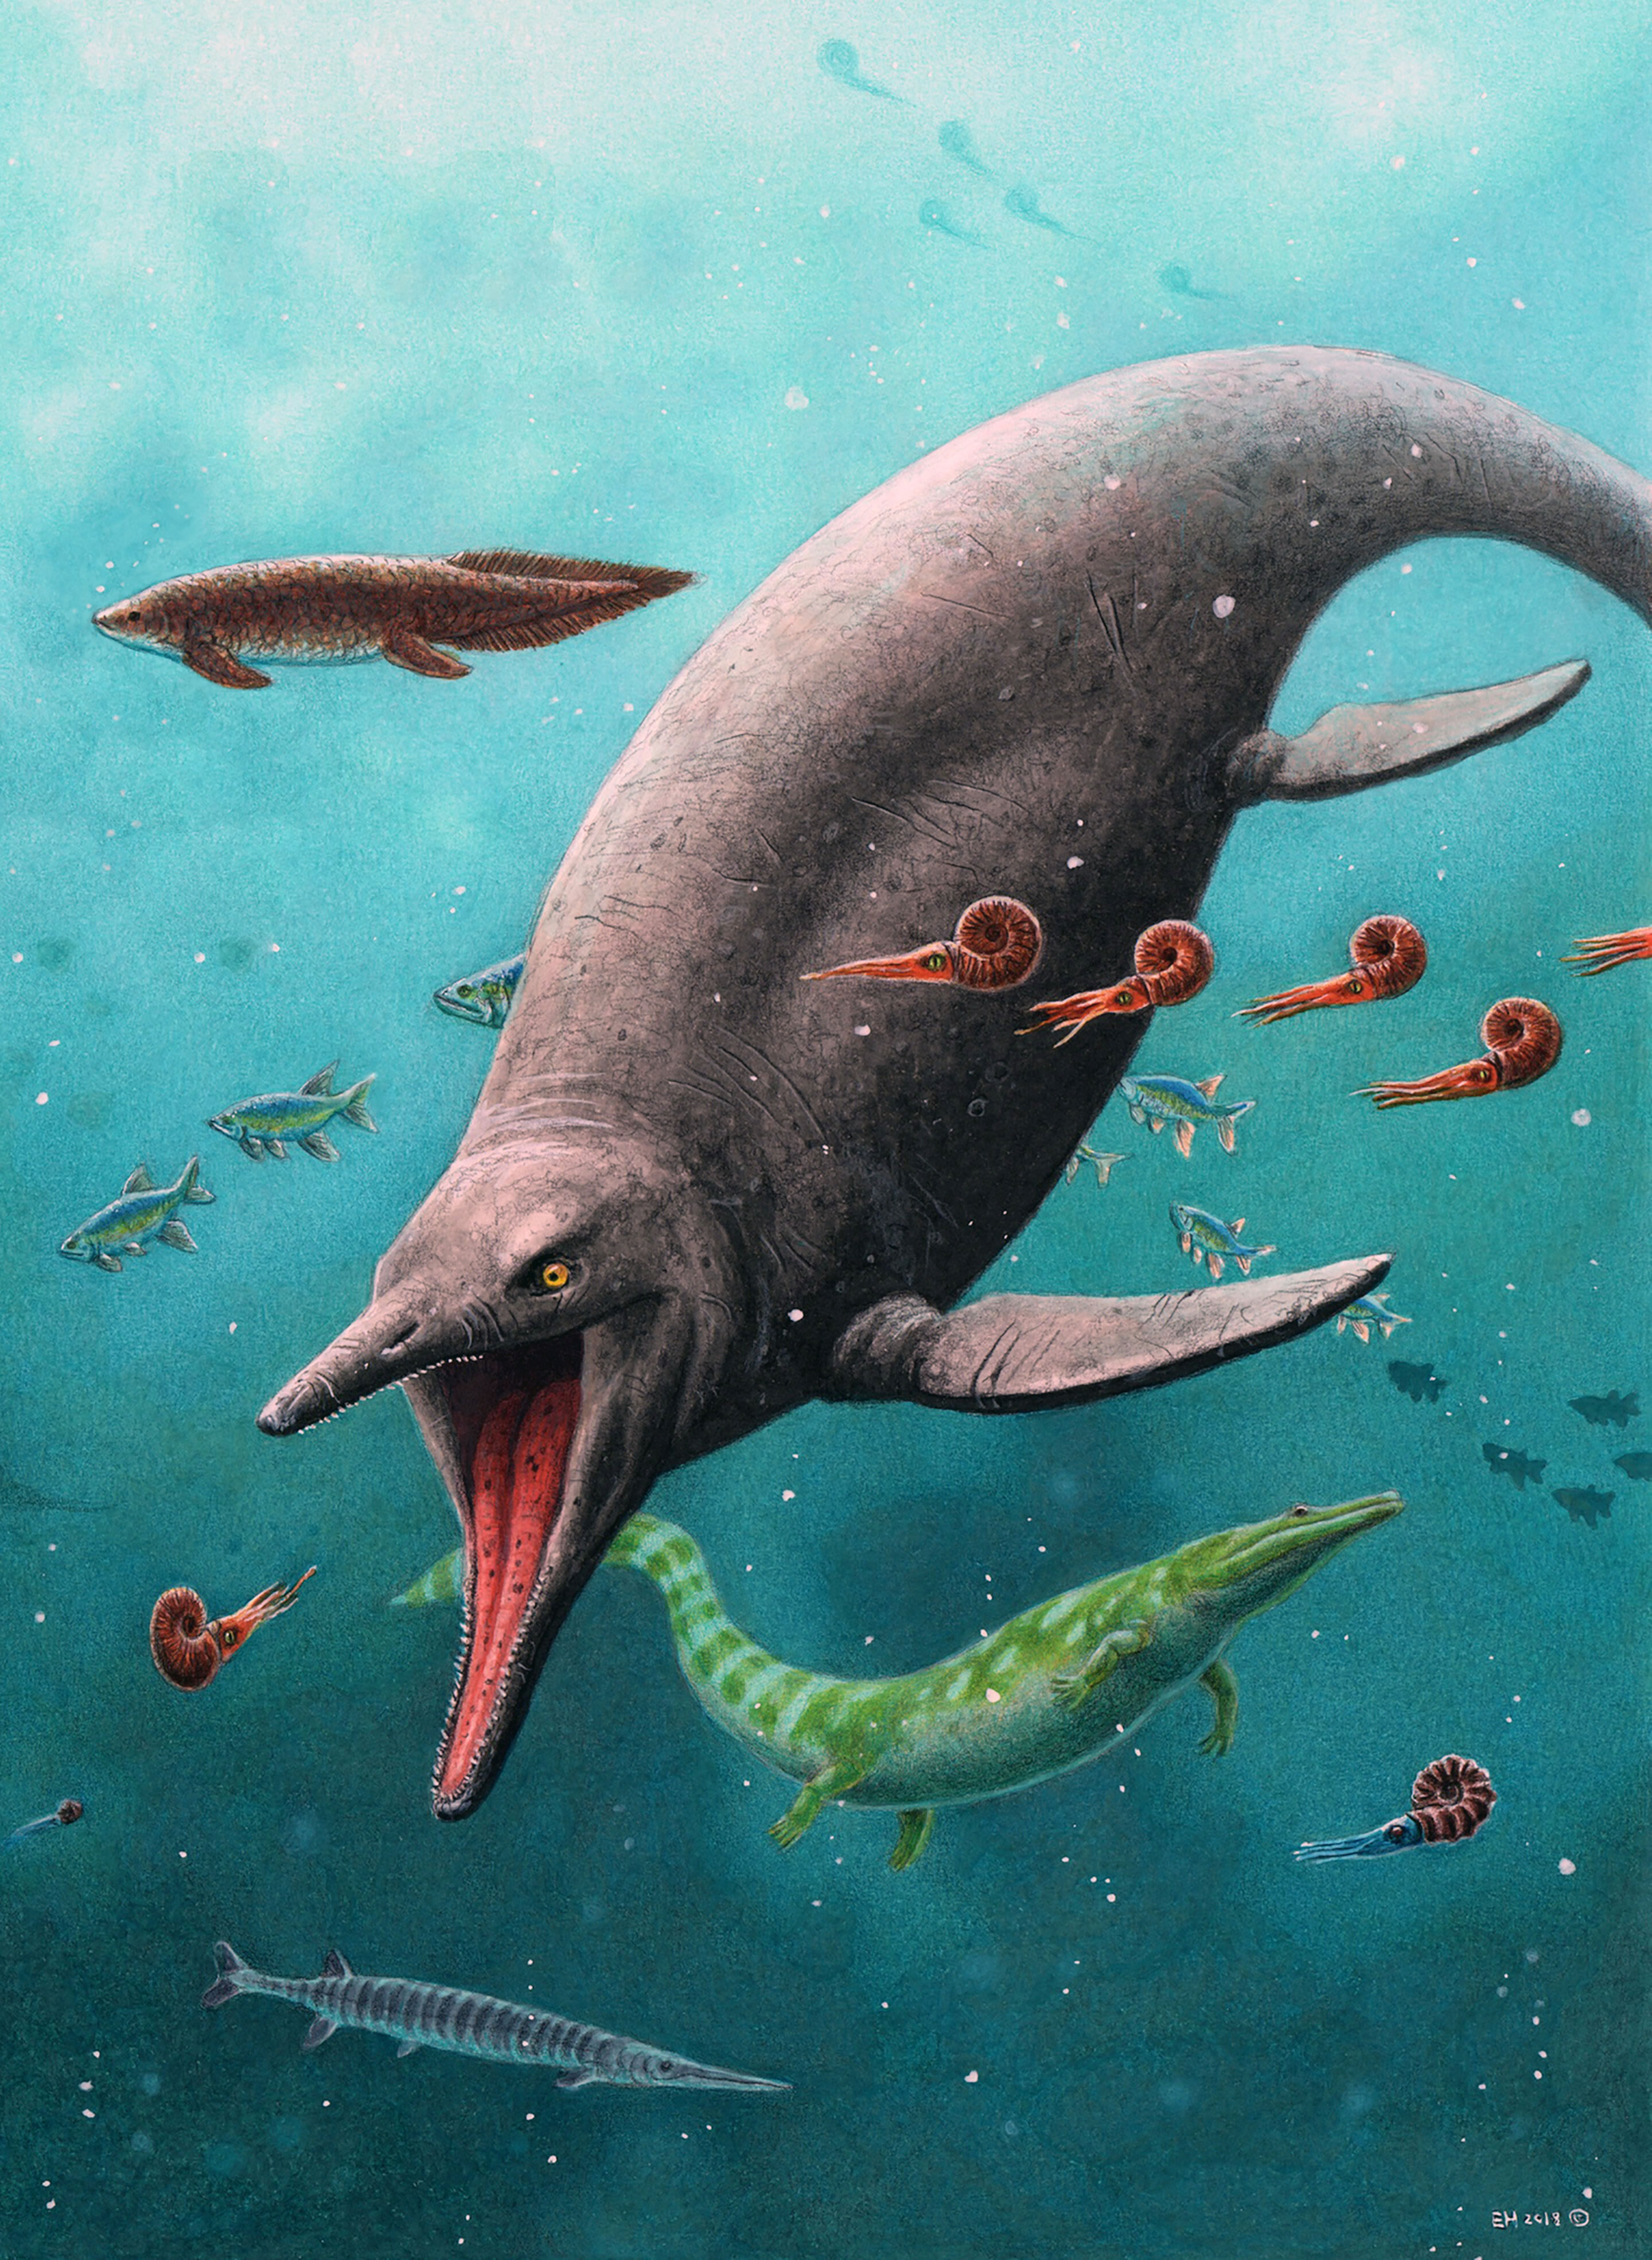 北极斯匹次卑尔根岛发现已知最古老的海洋爬行动物鱼龙化石遗骸